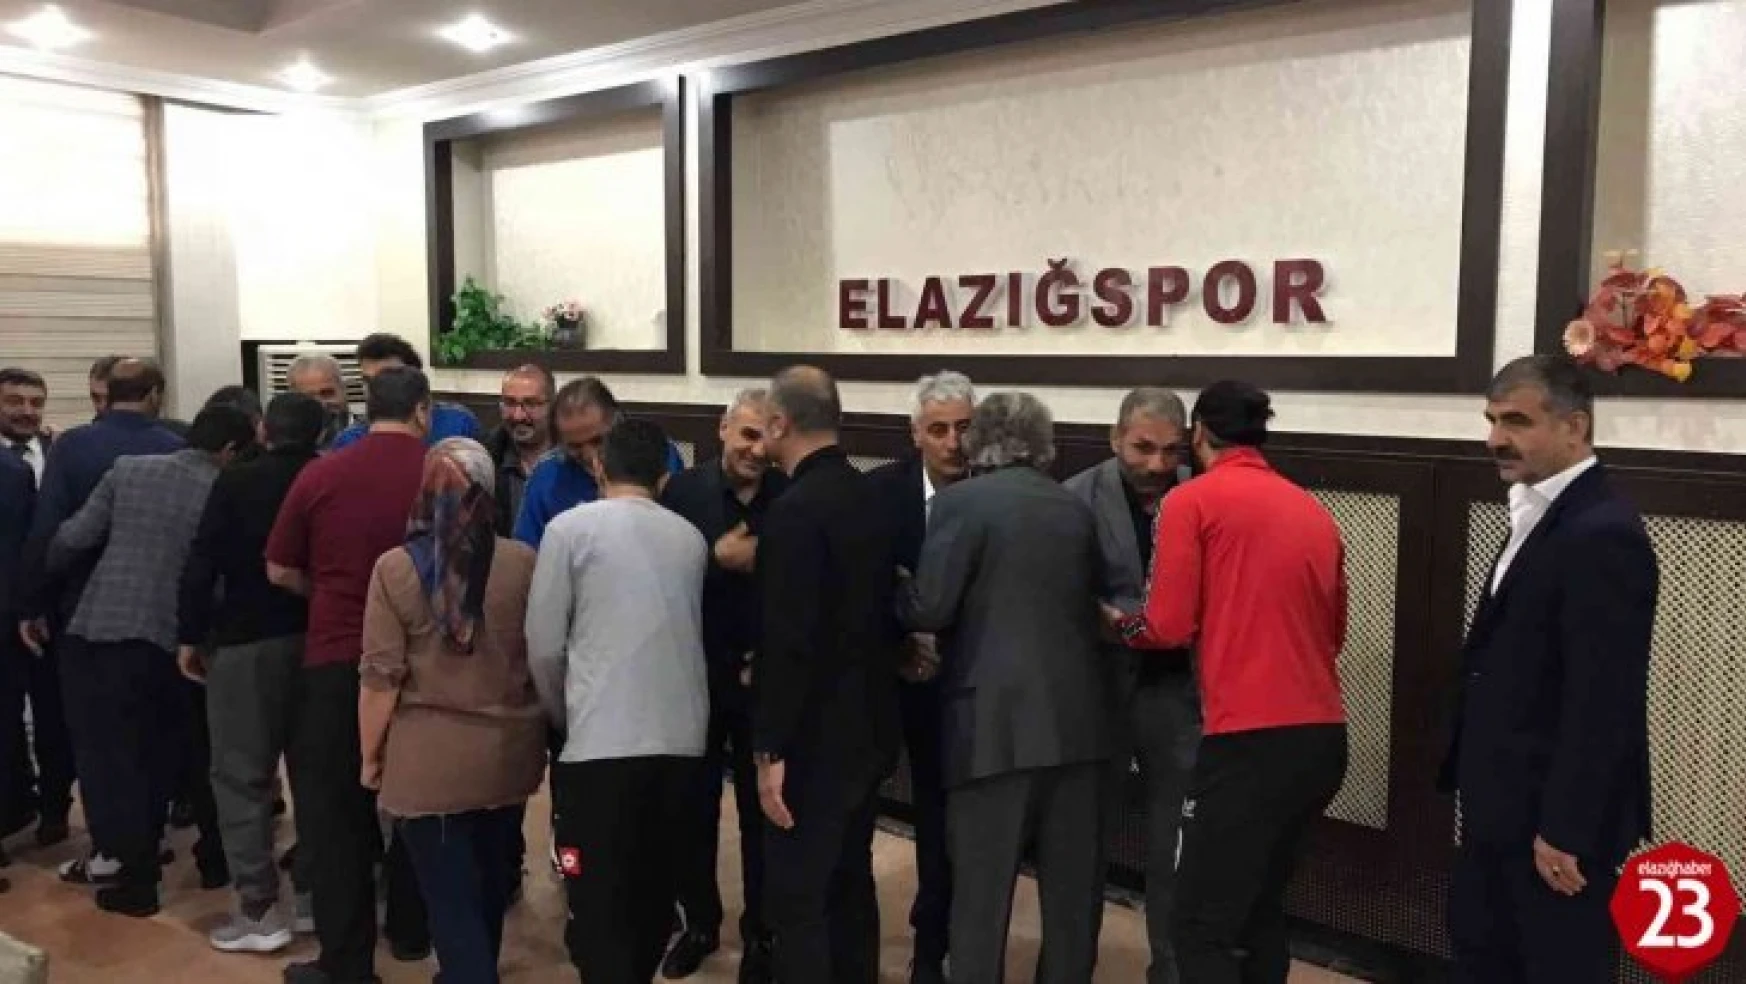 Elazığspor'da Bayramlaşma Töreni Yapıldı